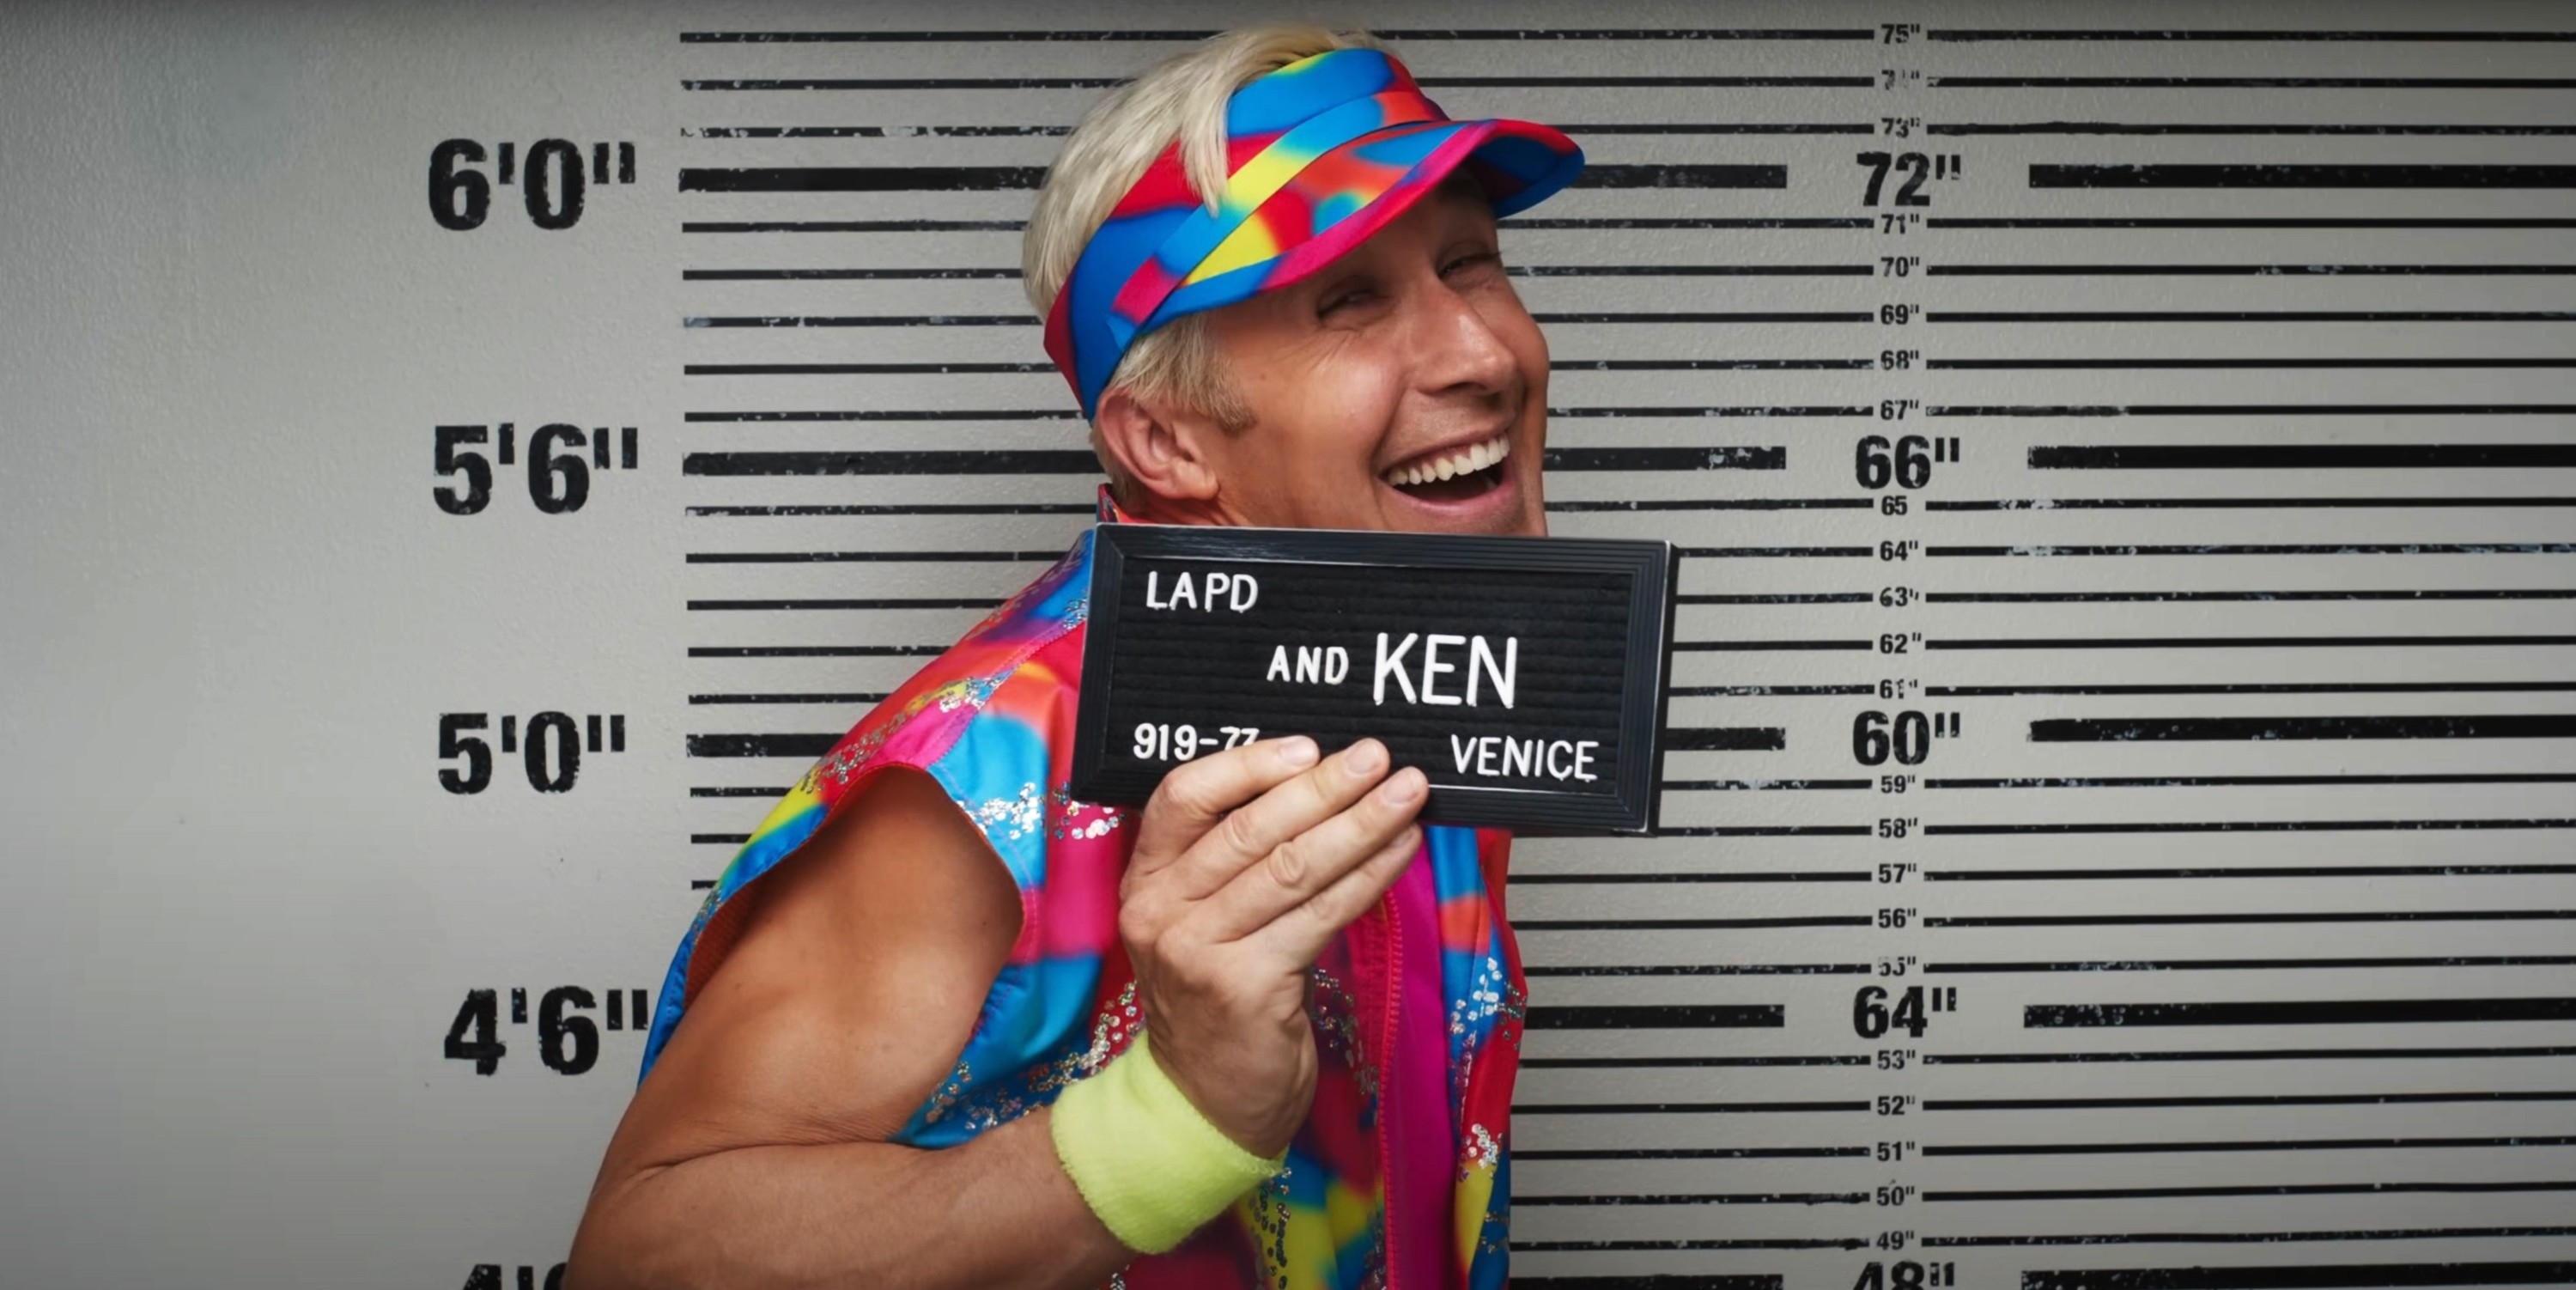 Ken smiling for his mug shot